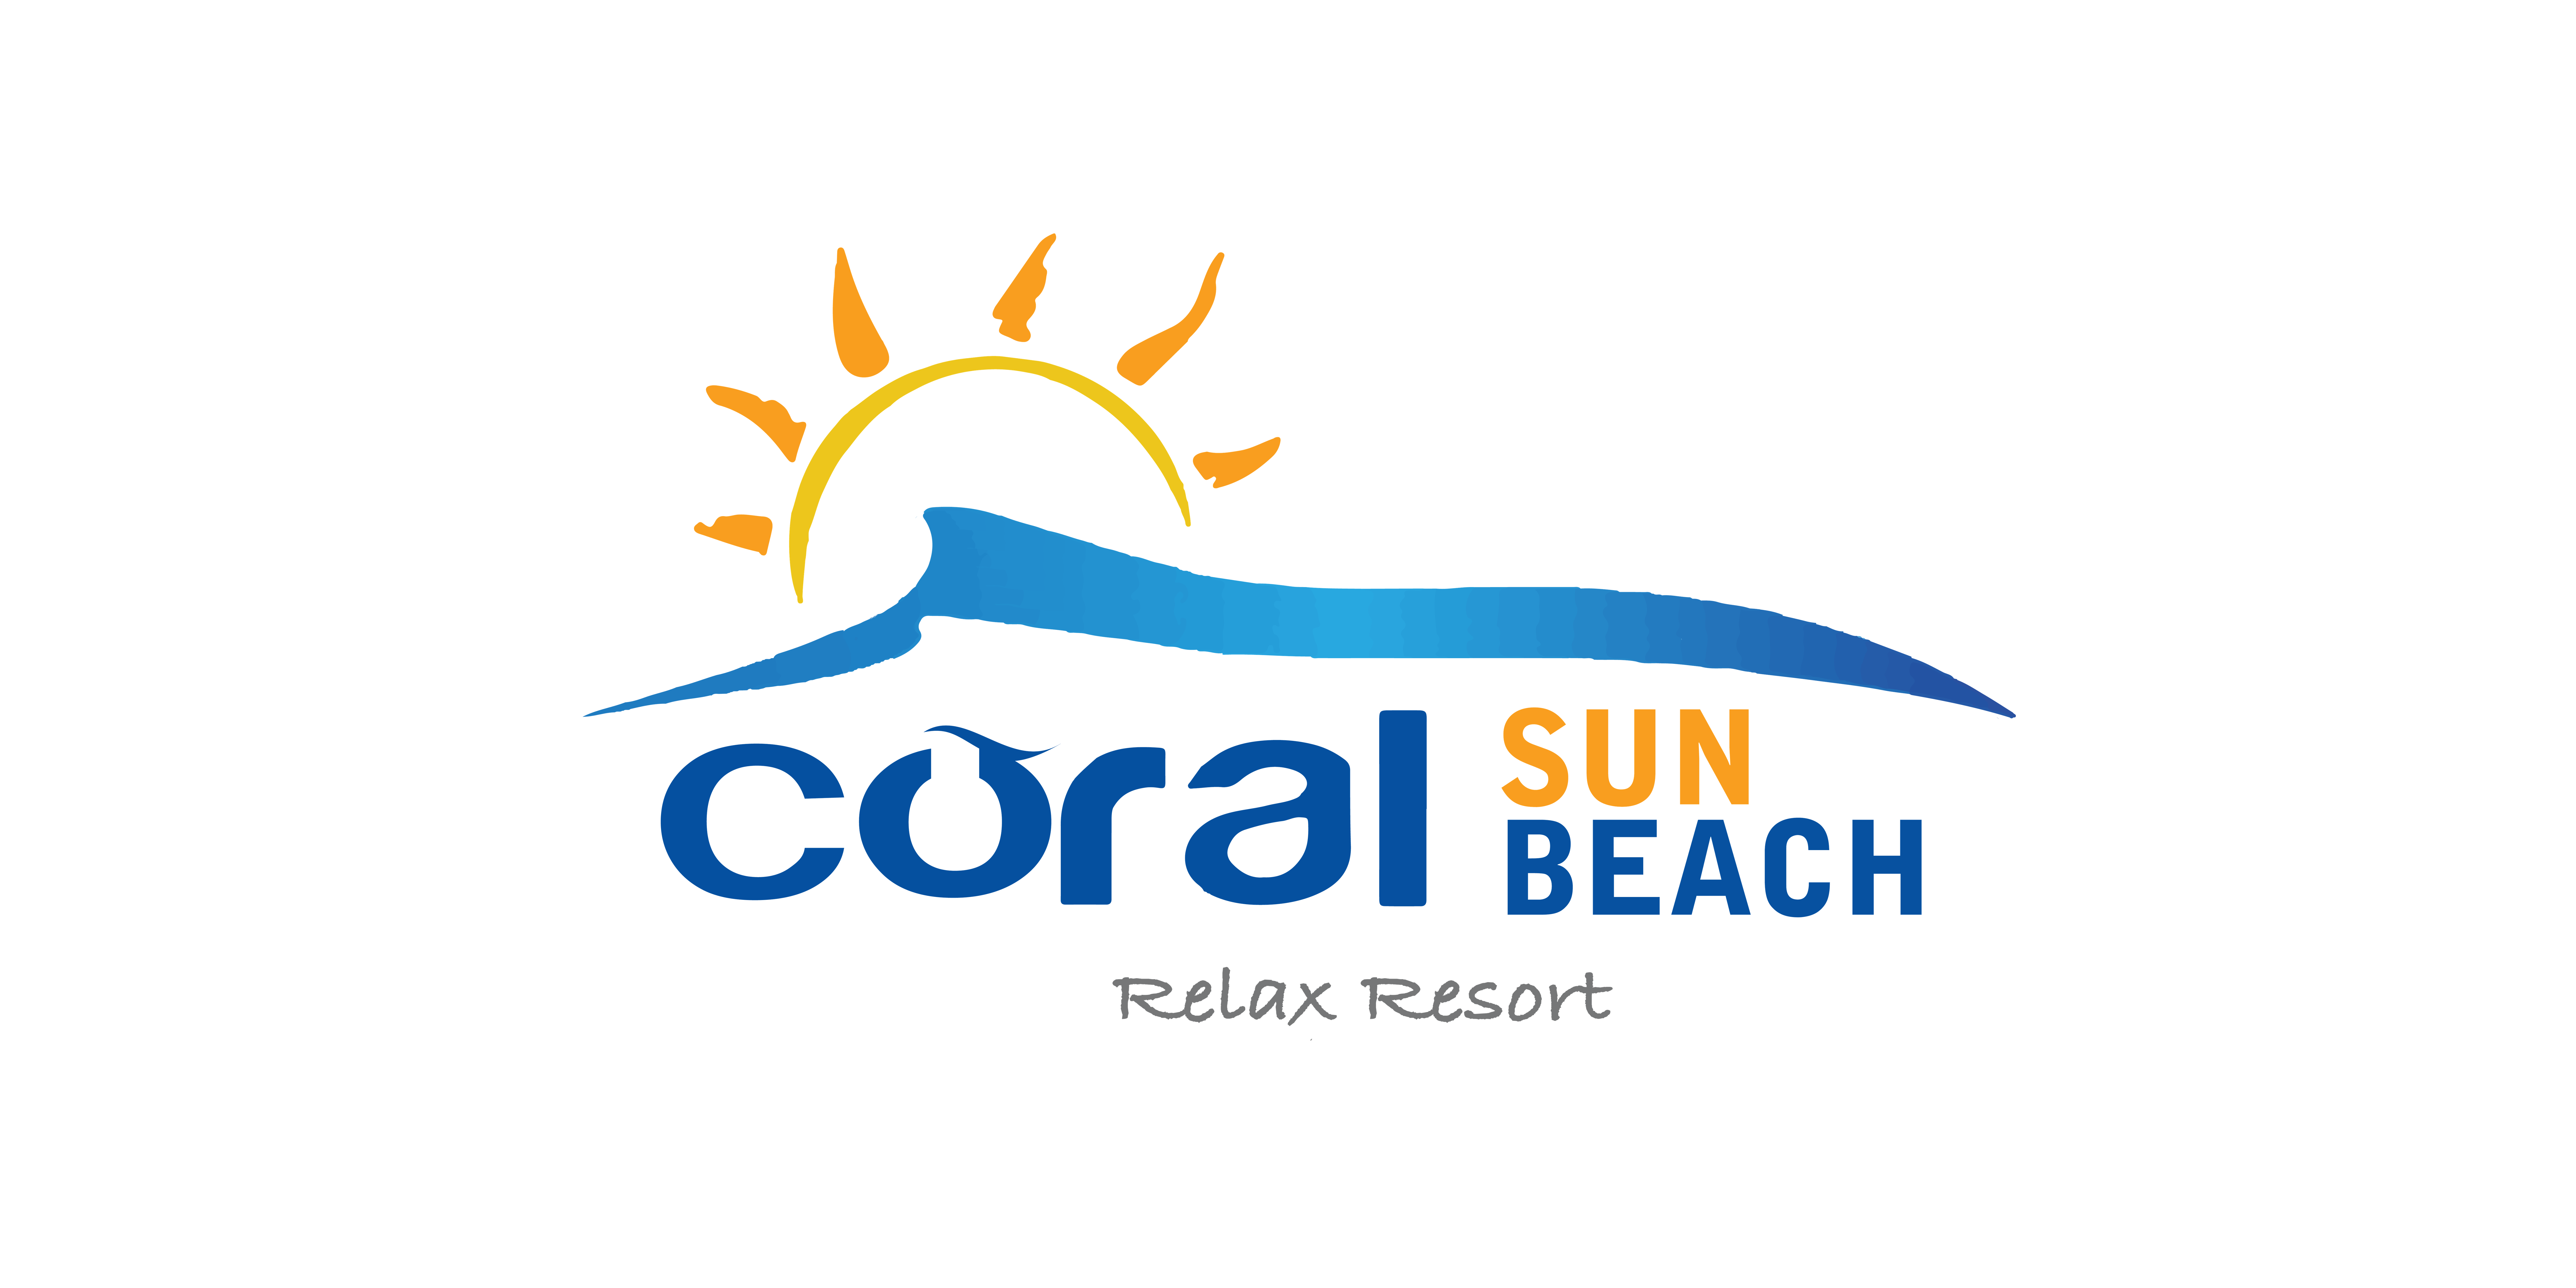 Coral Sun Beach